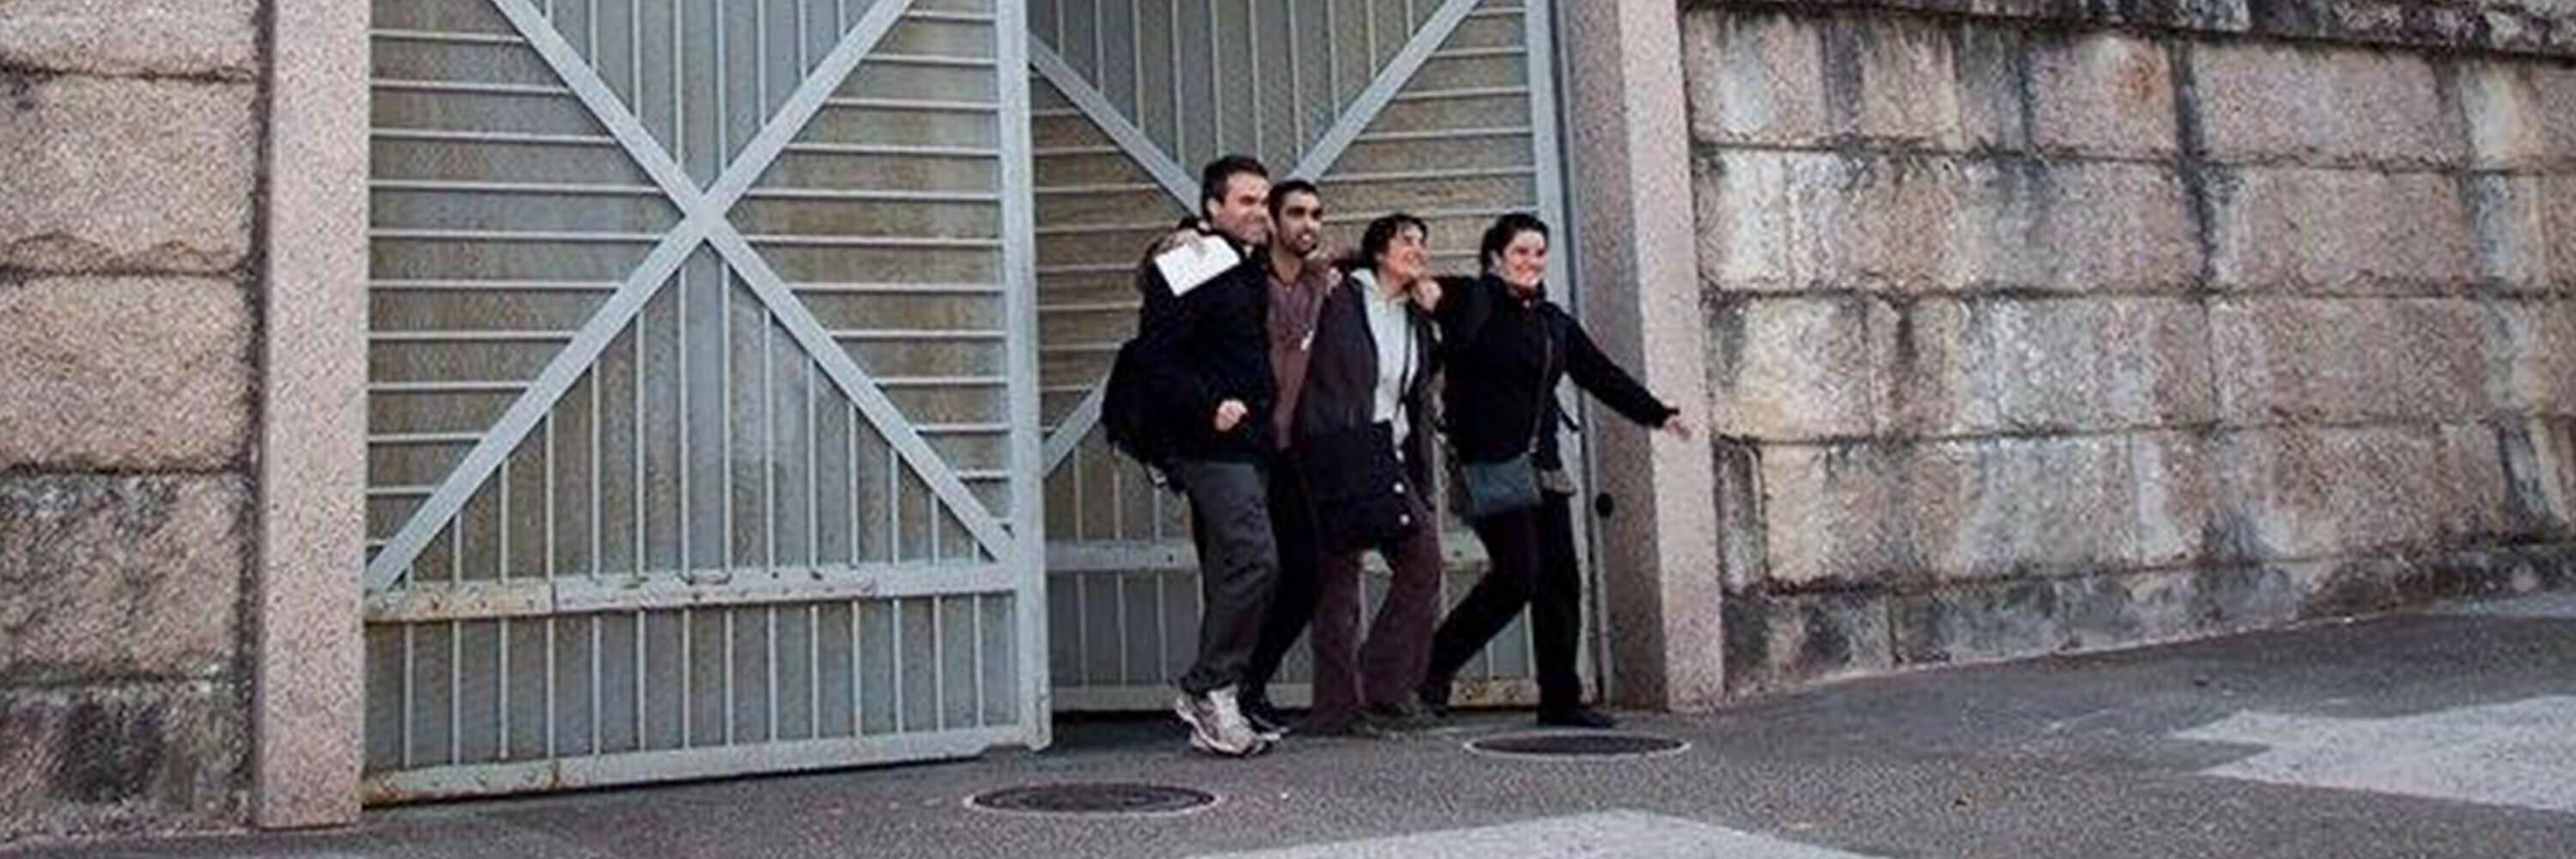 Sharon Nuñez saliendo de la cárcel con el cofundador de Igualdad Animal, José Valle, y David y Sara, otros dos activistas detenidos.